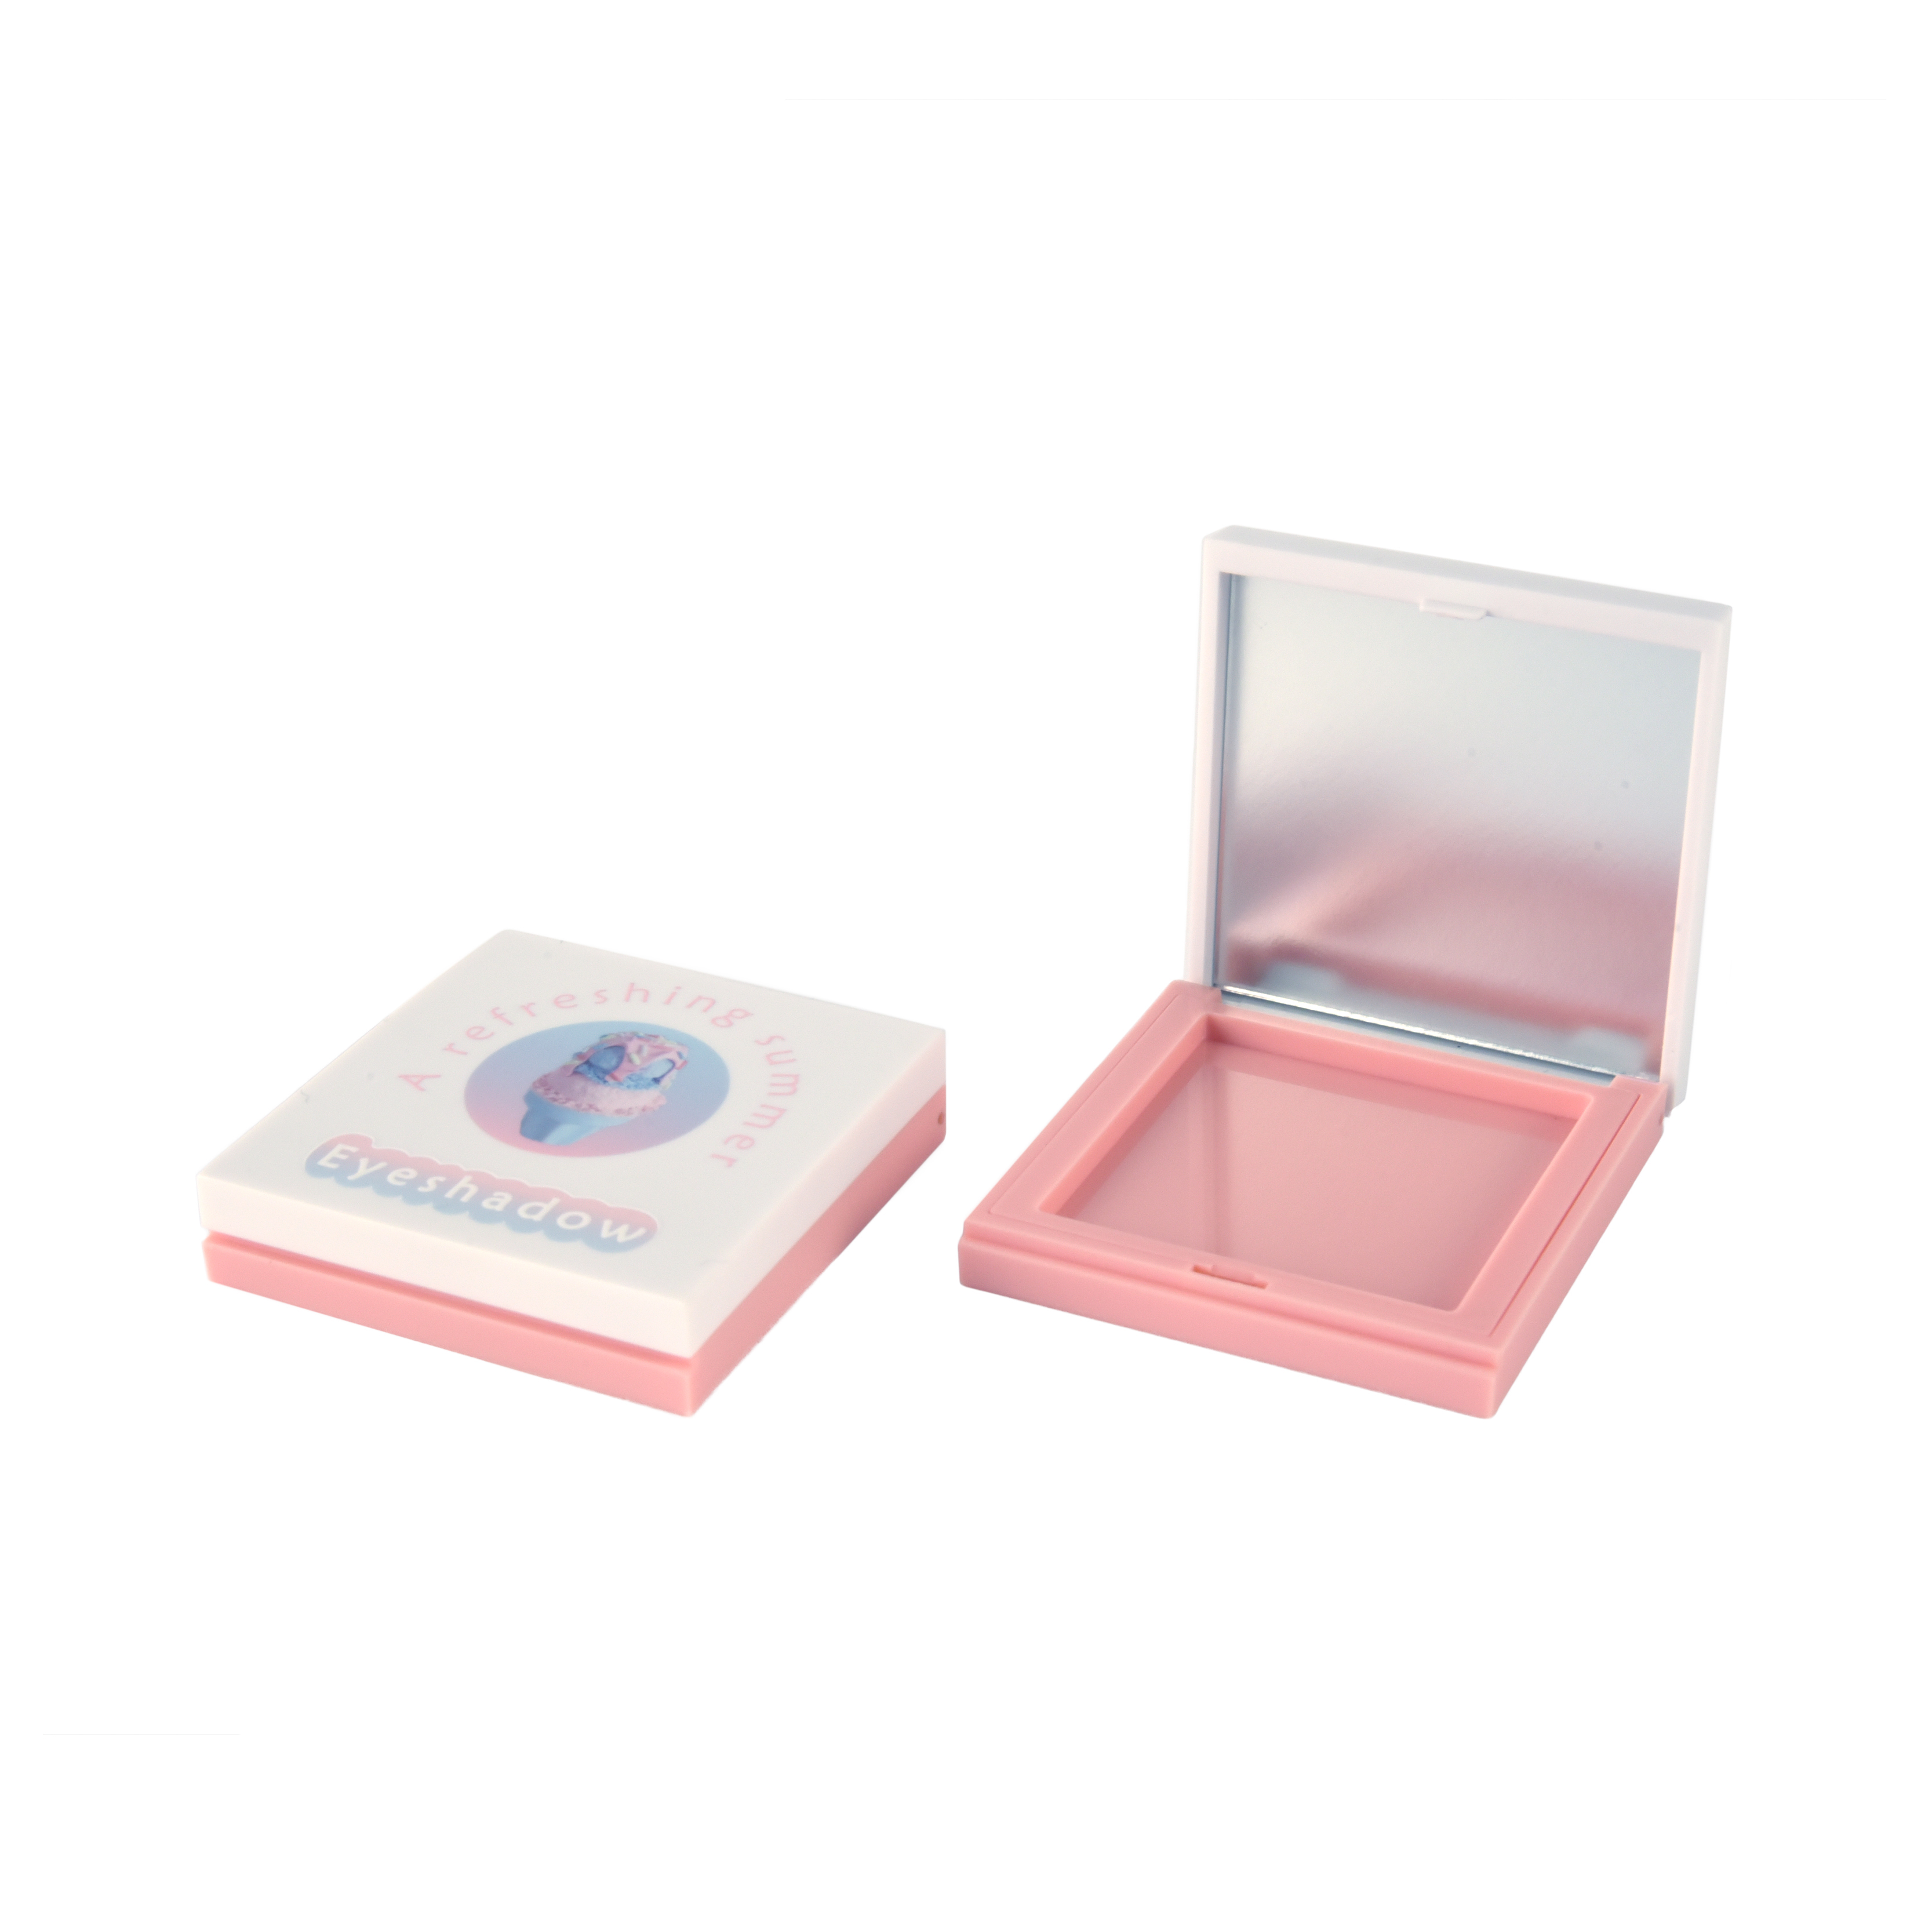 square petelitsoe phofo compact case 3D hatisang logo logo logo logo tloaelo